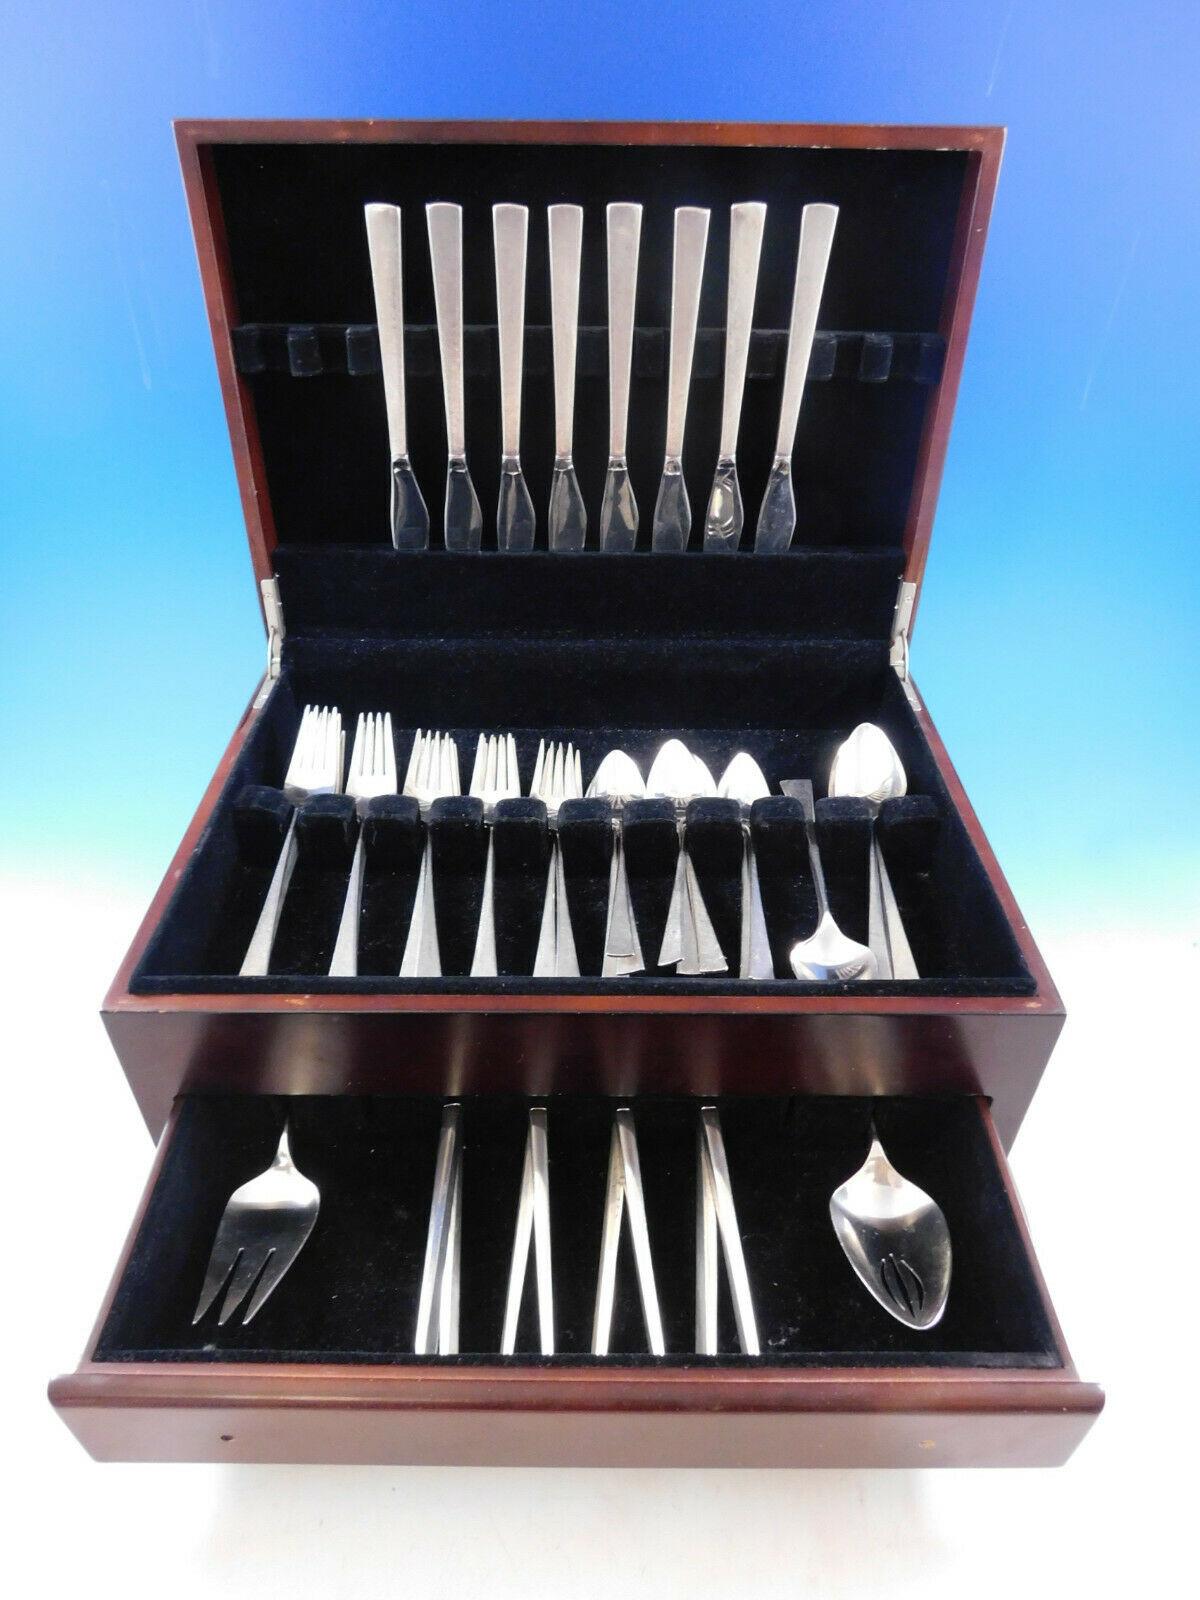 Da Vinci di Reed & Barton del 1967 circa, set di posate in argento sterling - 50 pezzi. Questo set comprende:

8 coltelli, 9 1/8